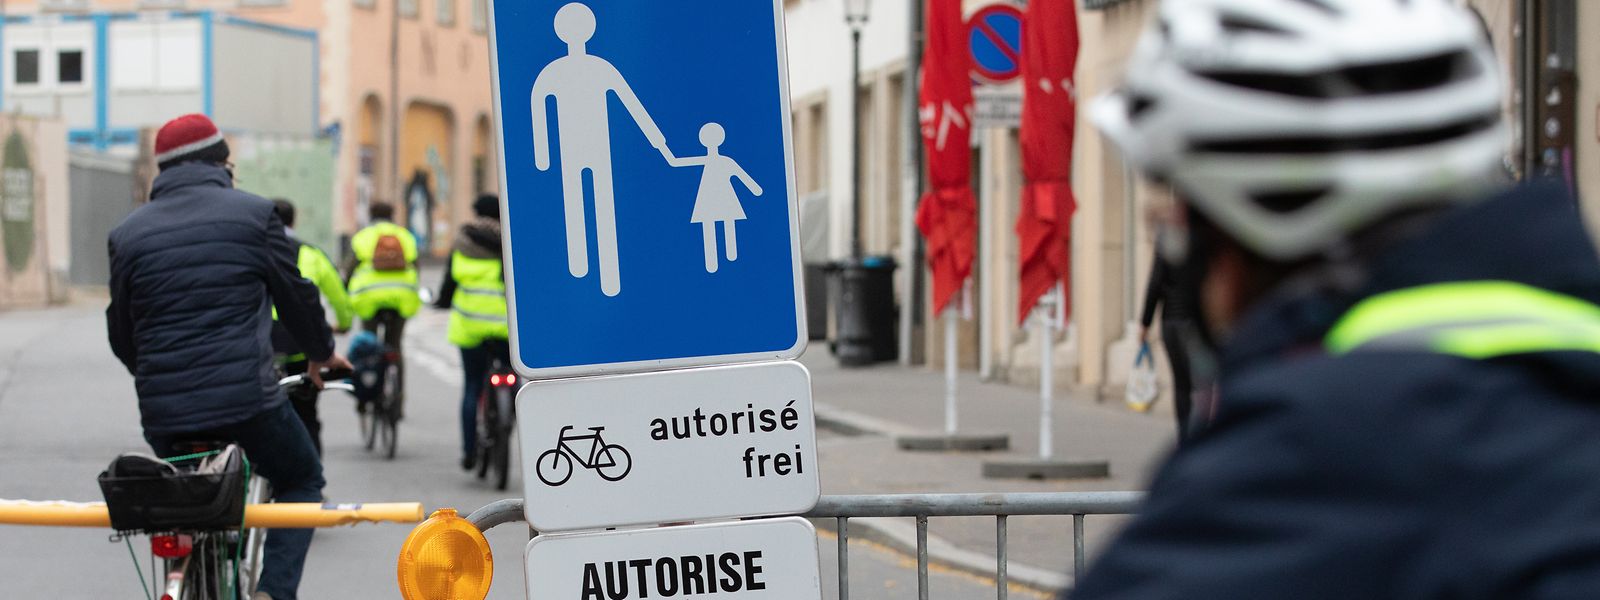 Für die Vereinigung ProVelo soll eine Fußgängerzone mehr Sicherheit für Radfahrer bringen.